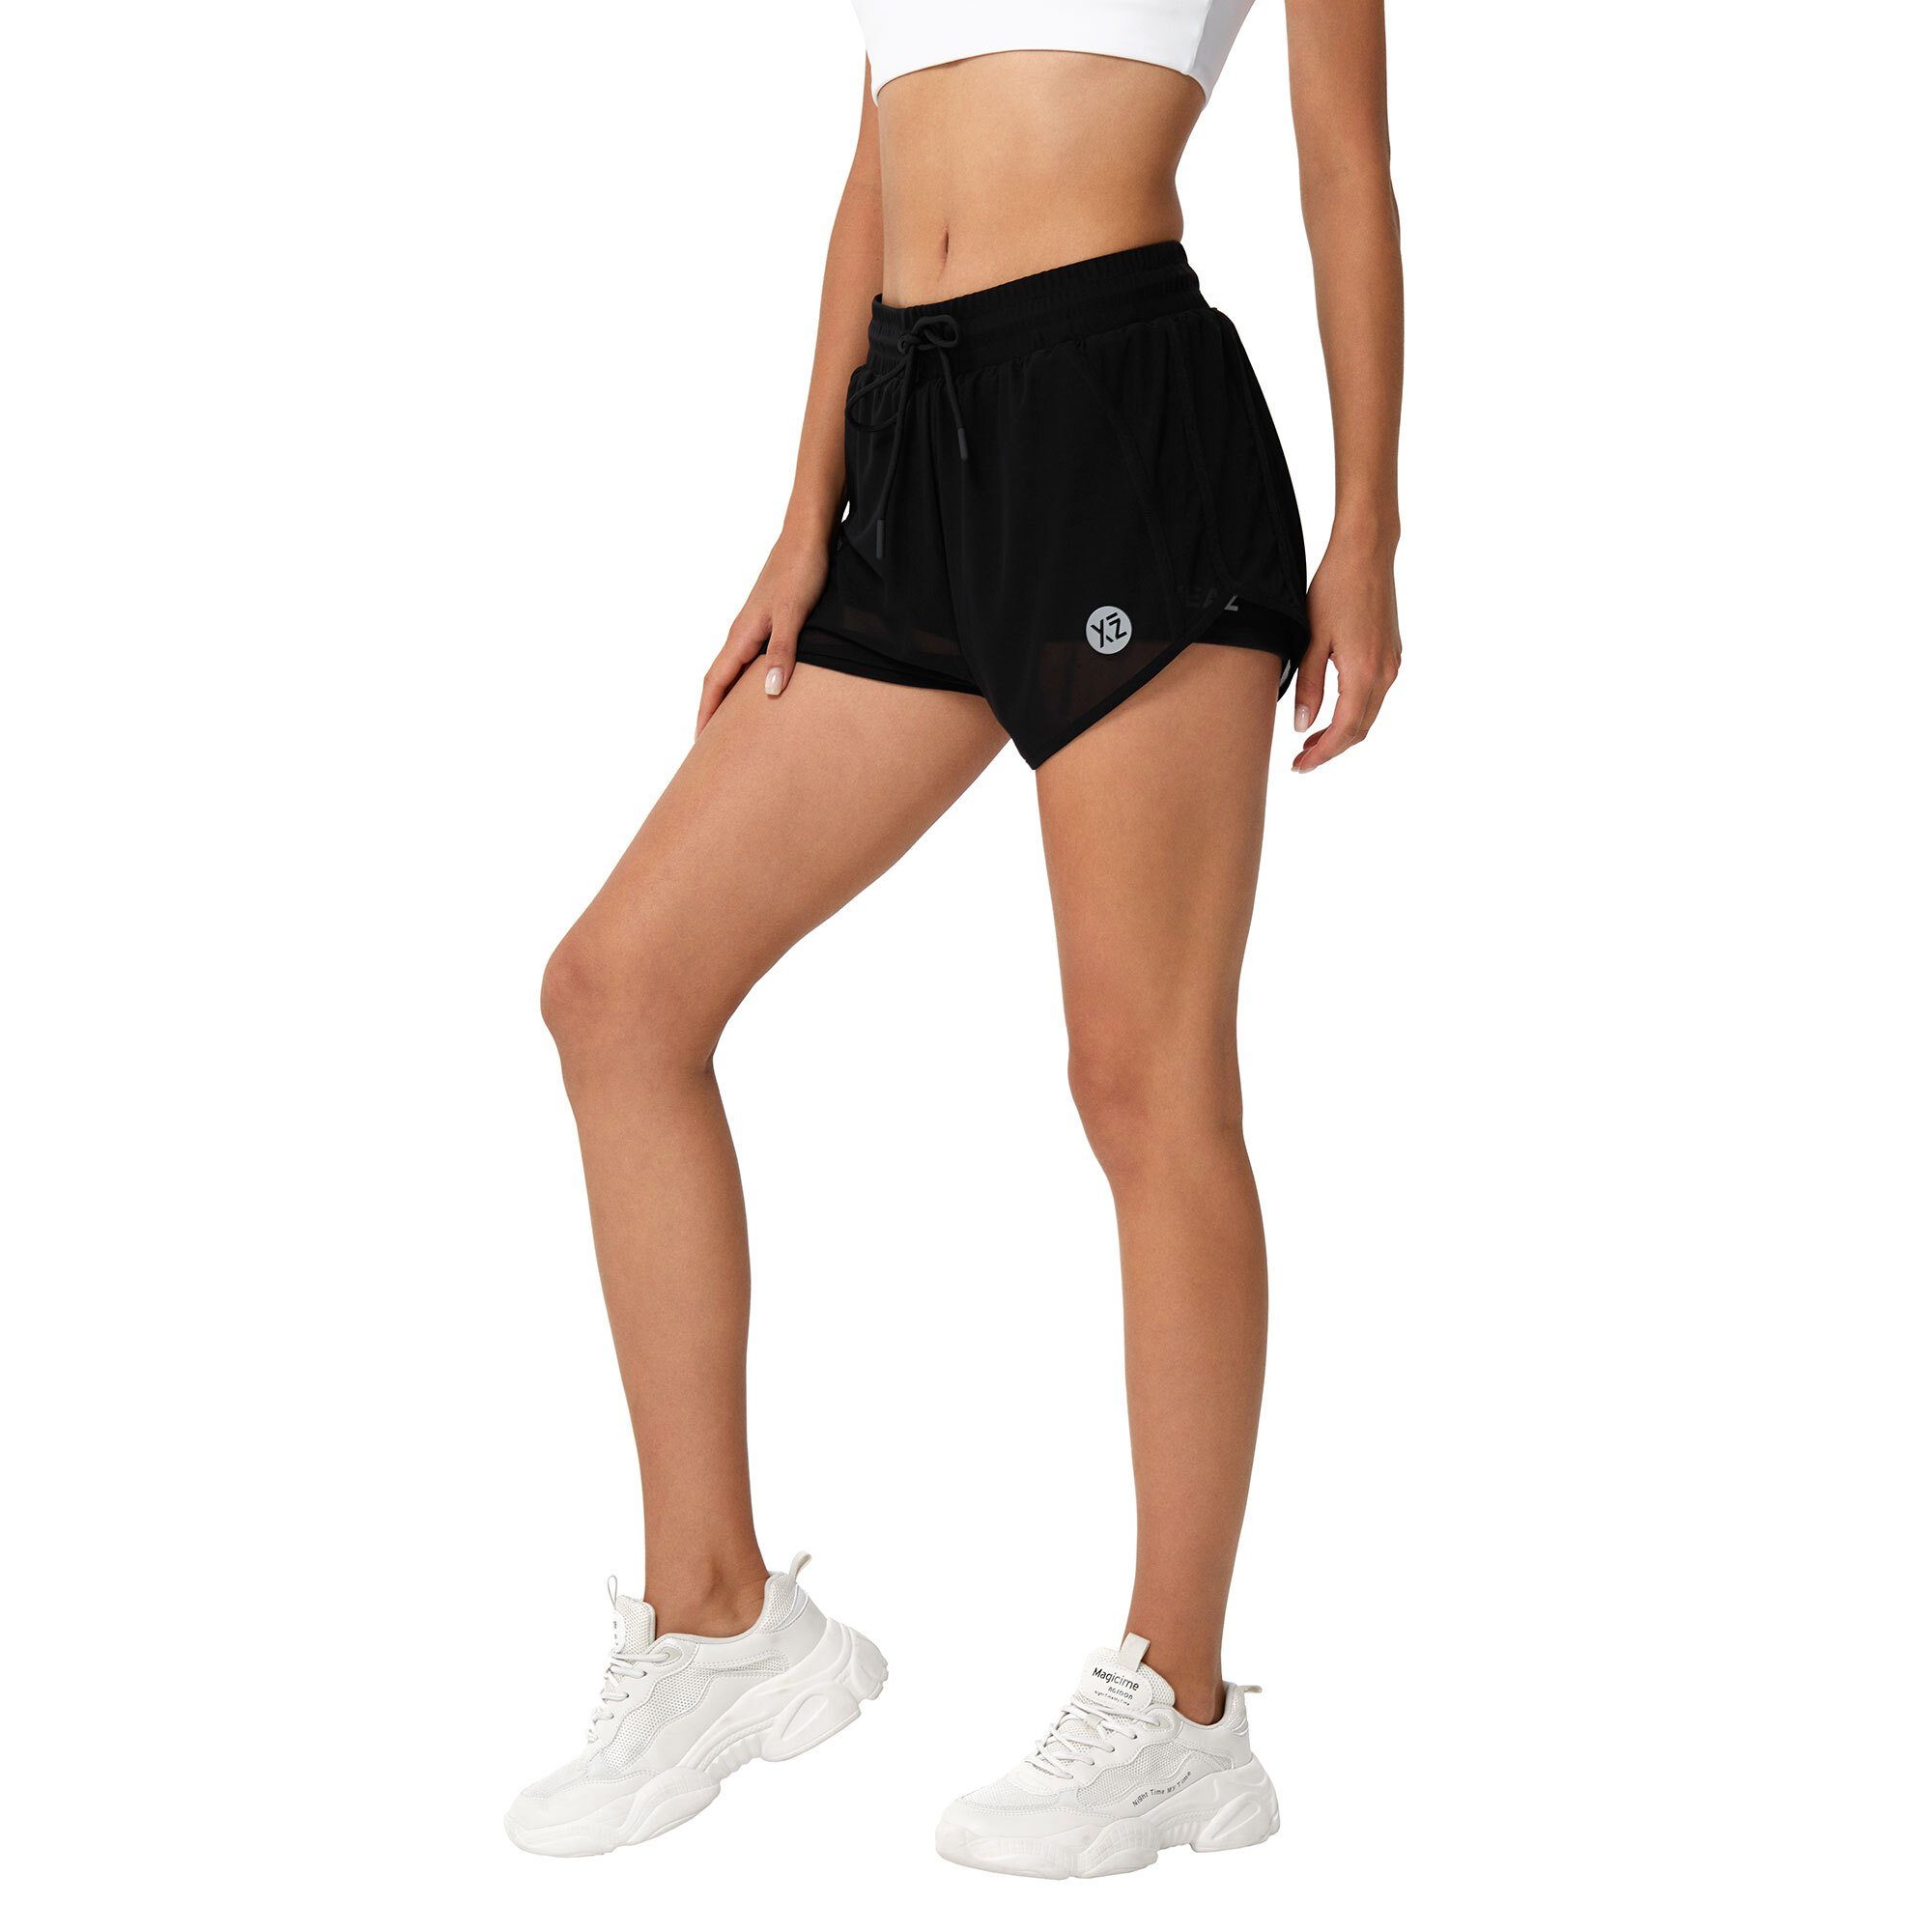 YEAZ (2-tlg) SQUAT shorts Yogashorts schwarz